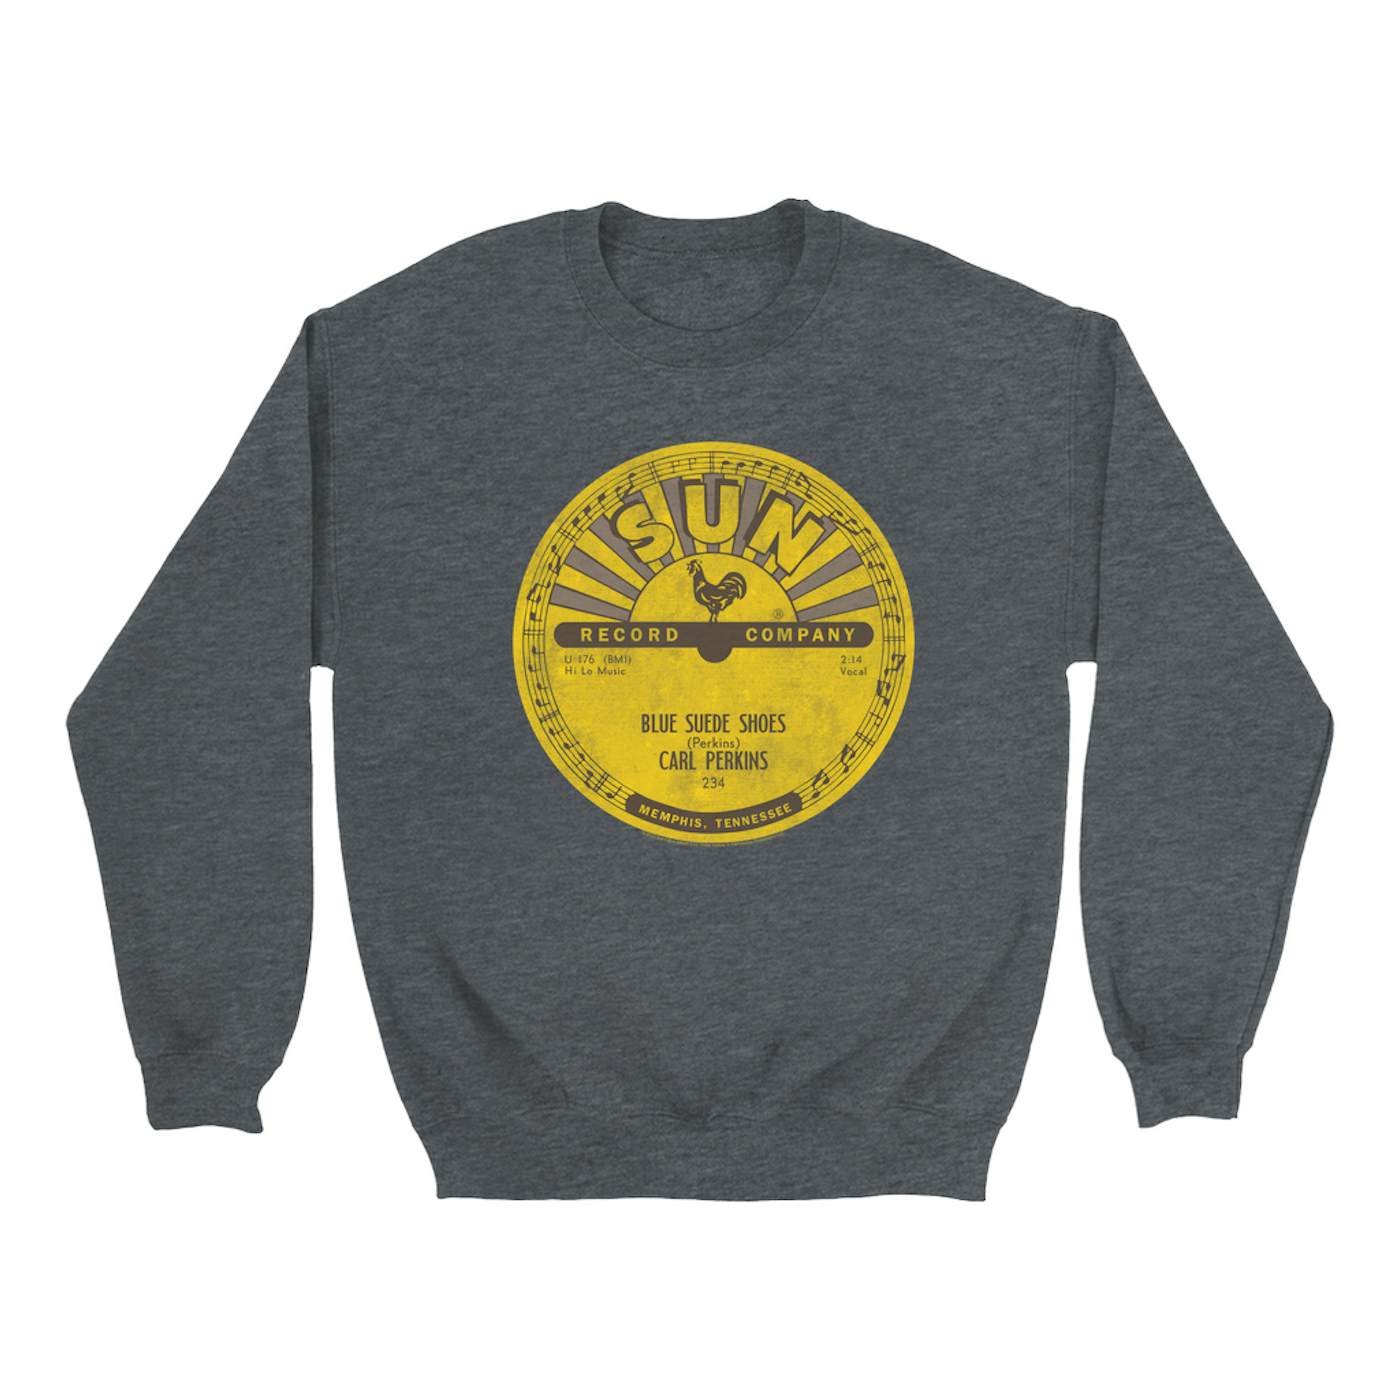 Carl Perkins Sweatshirt | Blue Suede Shoes Record Label Distressed Carl Perkins Sweatshirt